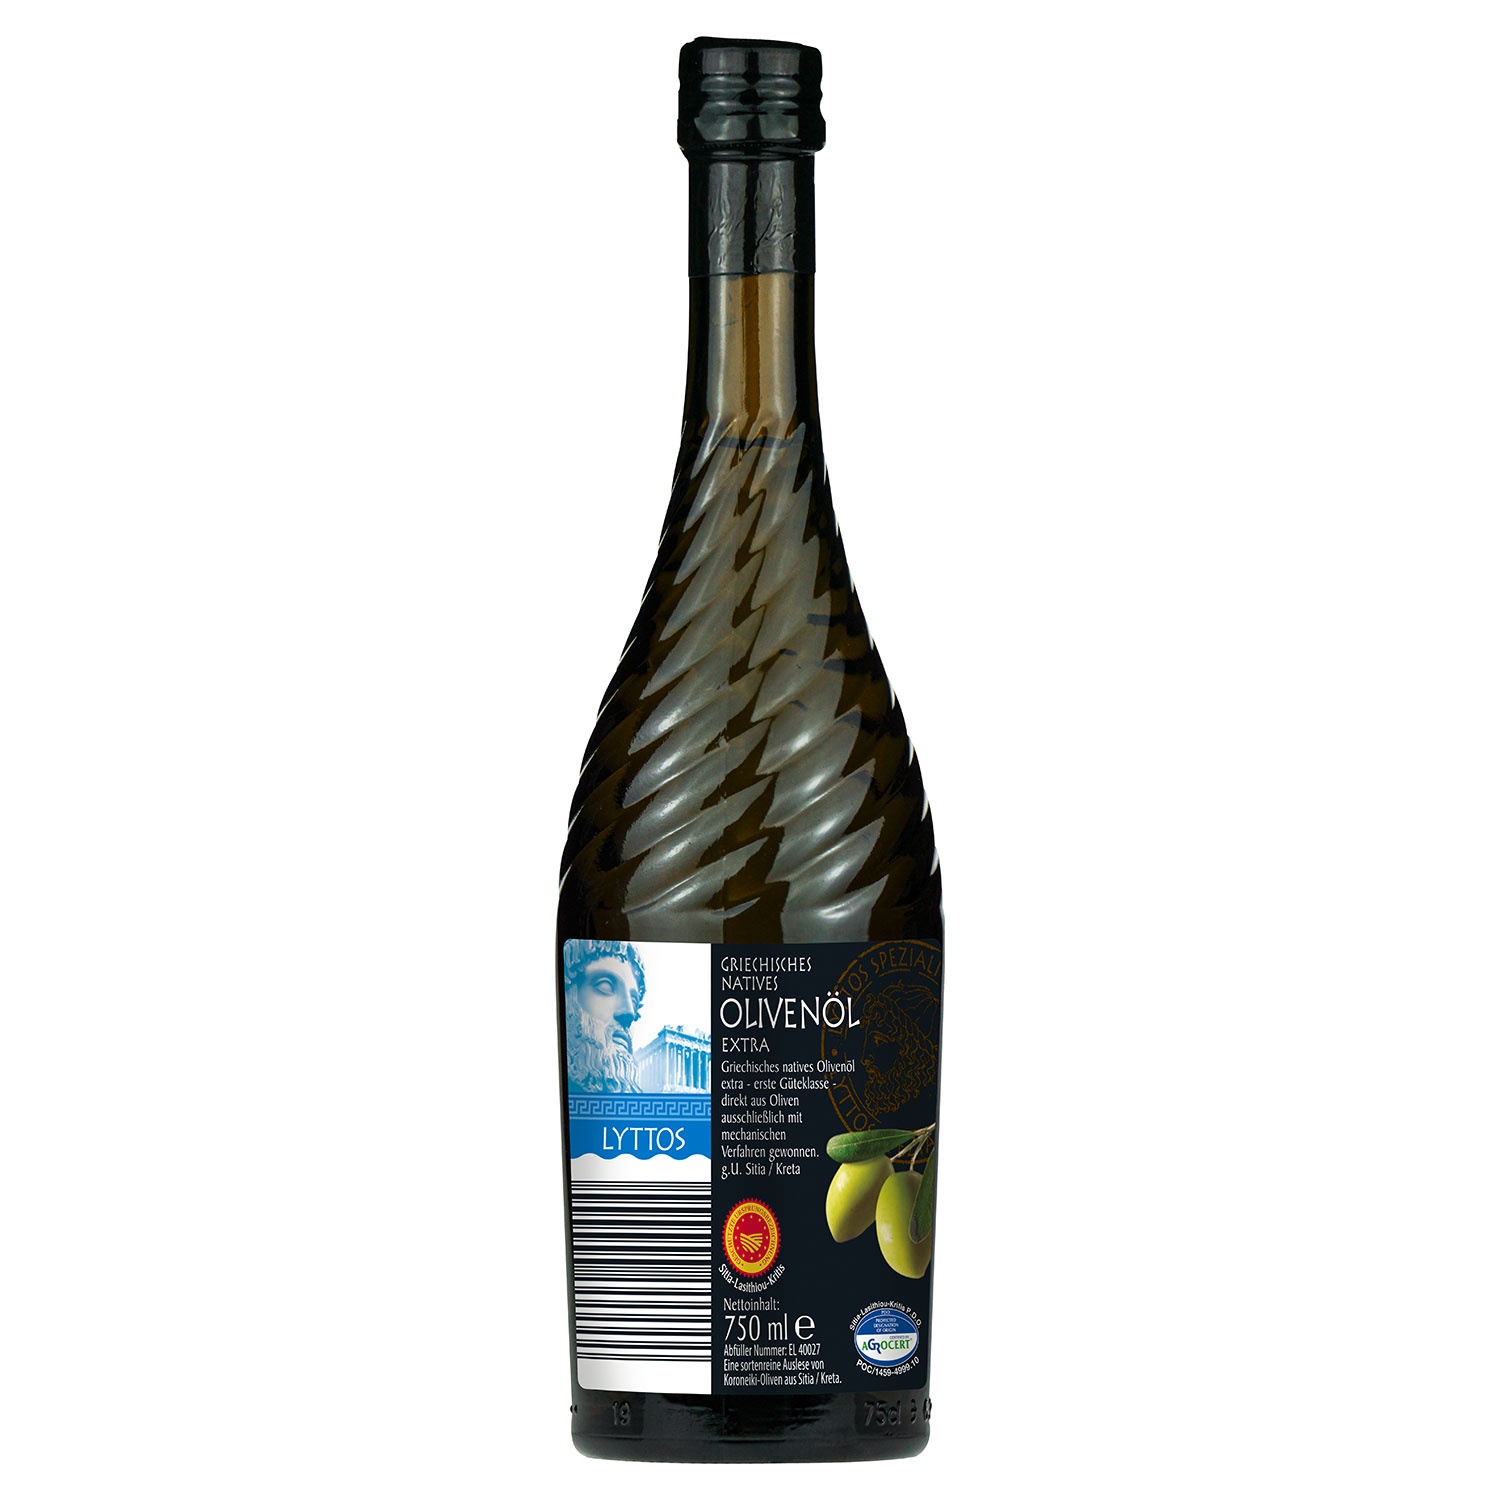 LYTTOS Griechisches natives Olivenöl extra 750 ml